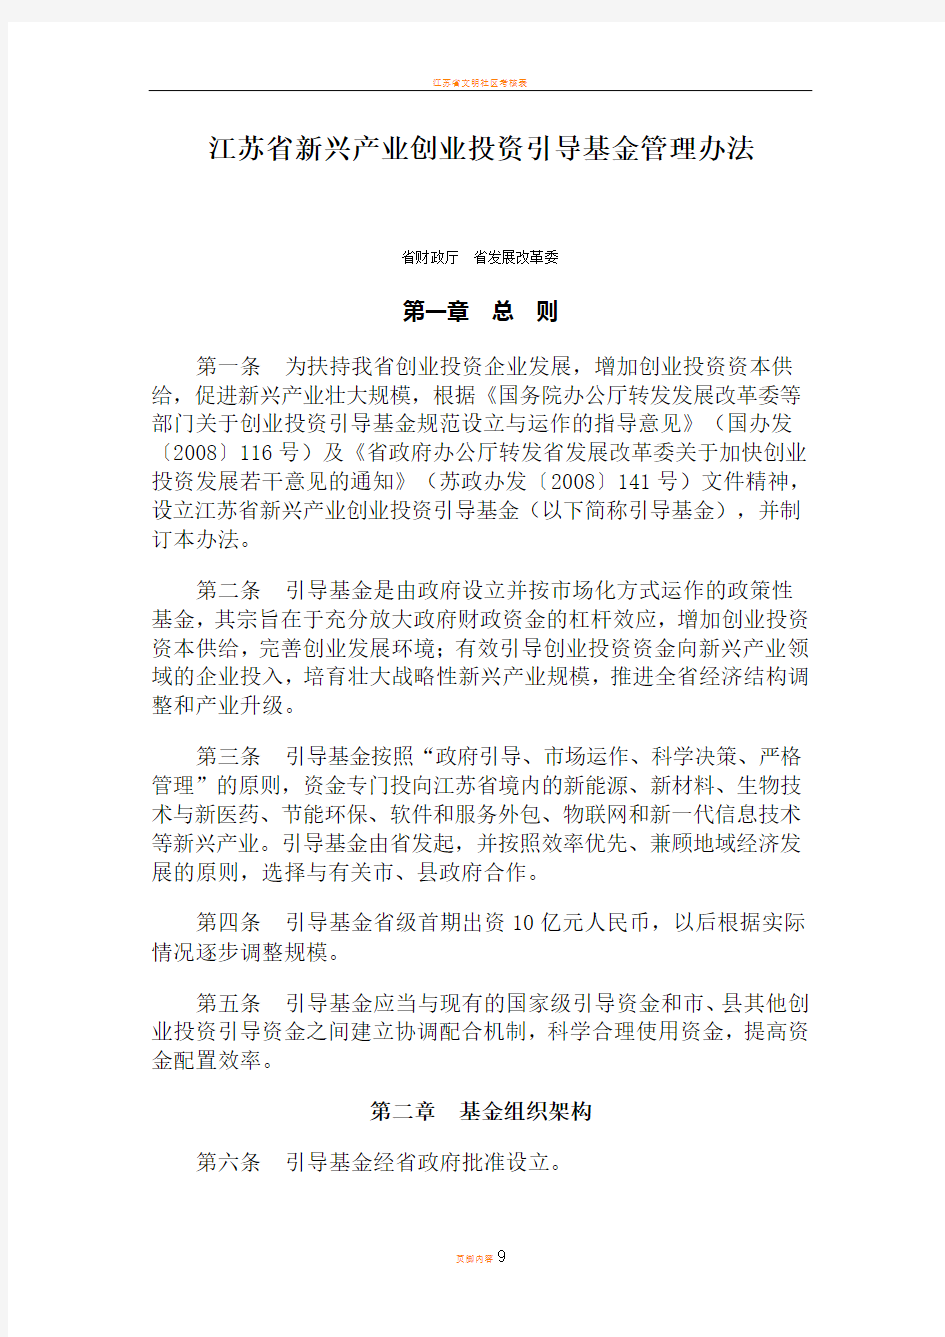 江苏省新兴产业创业投资引导基金管理办法